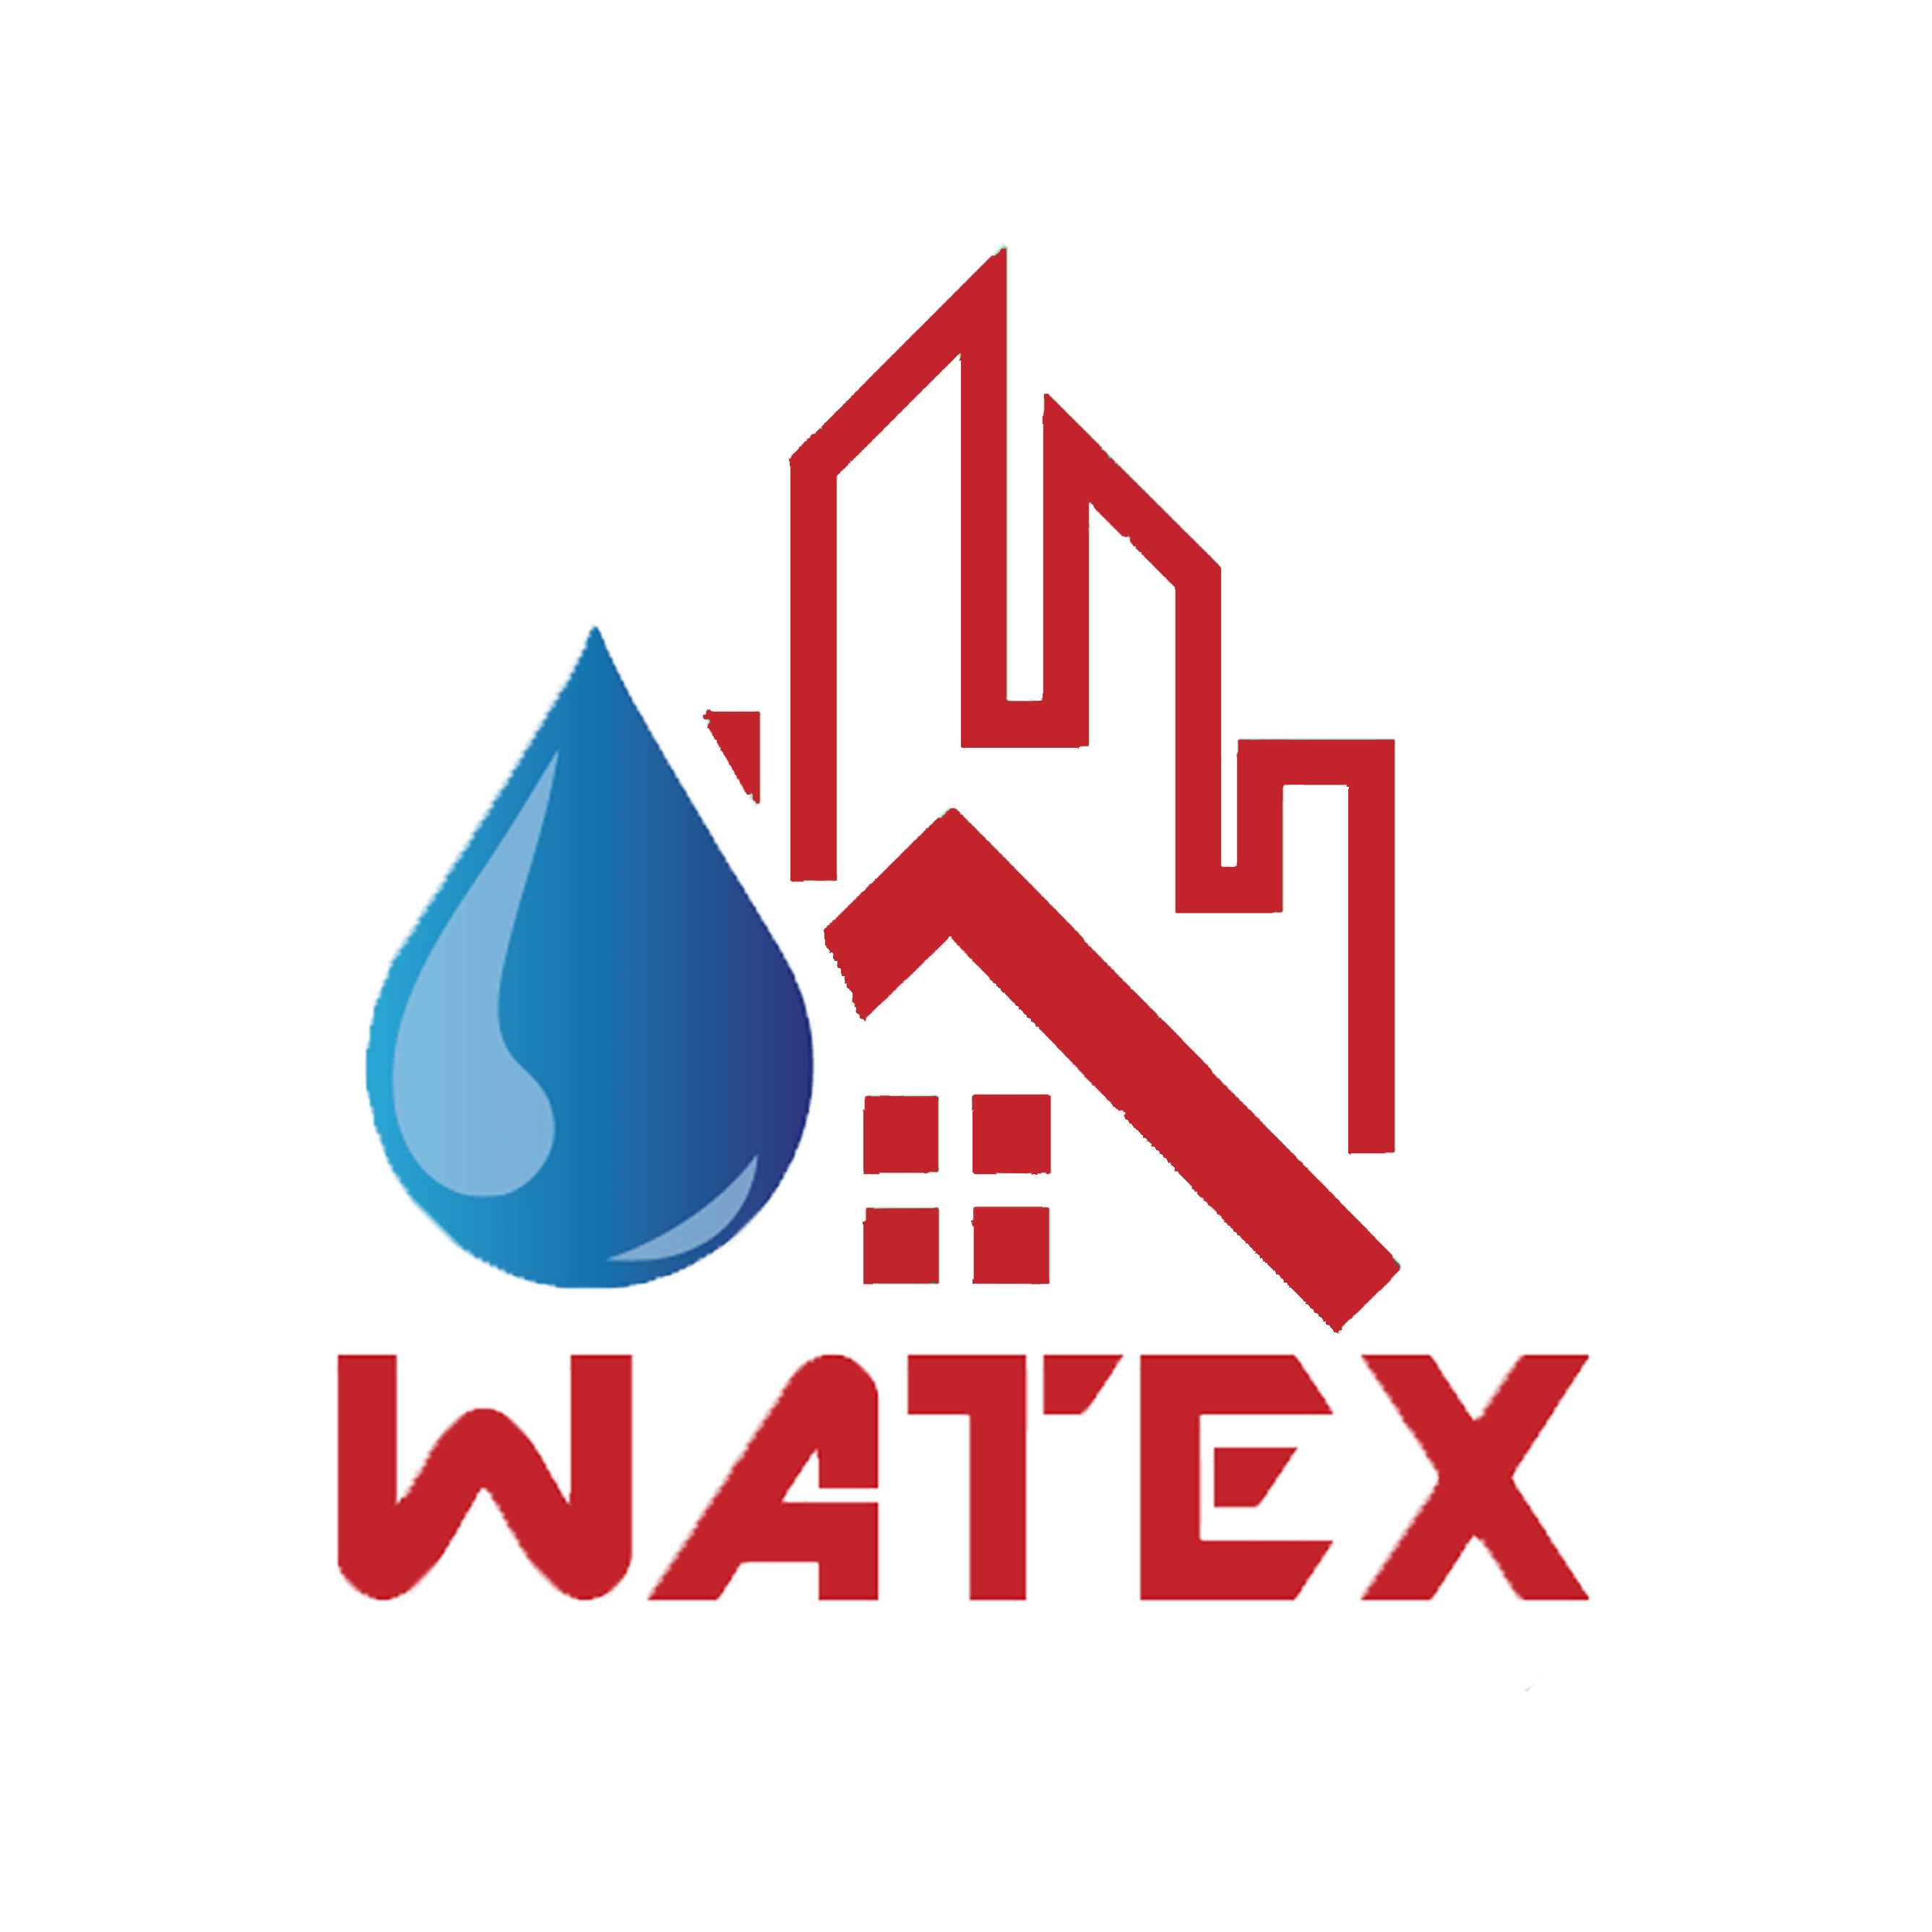 Watex Pump Industries